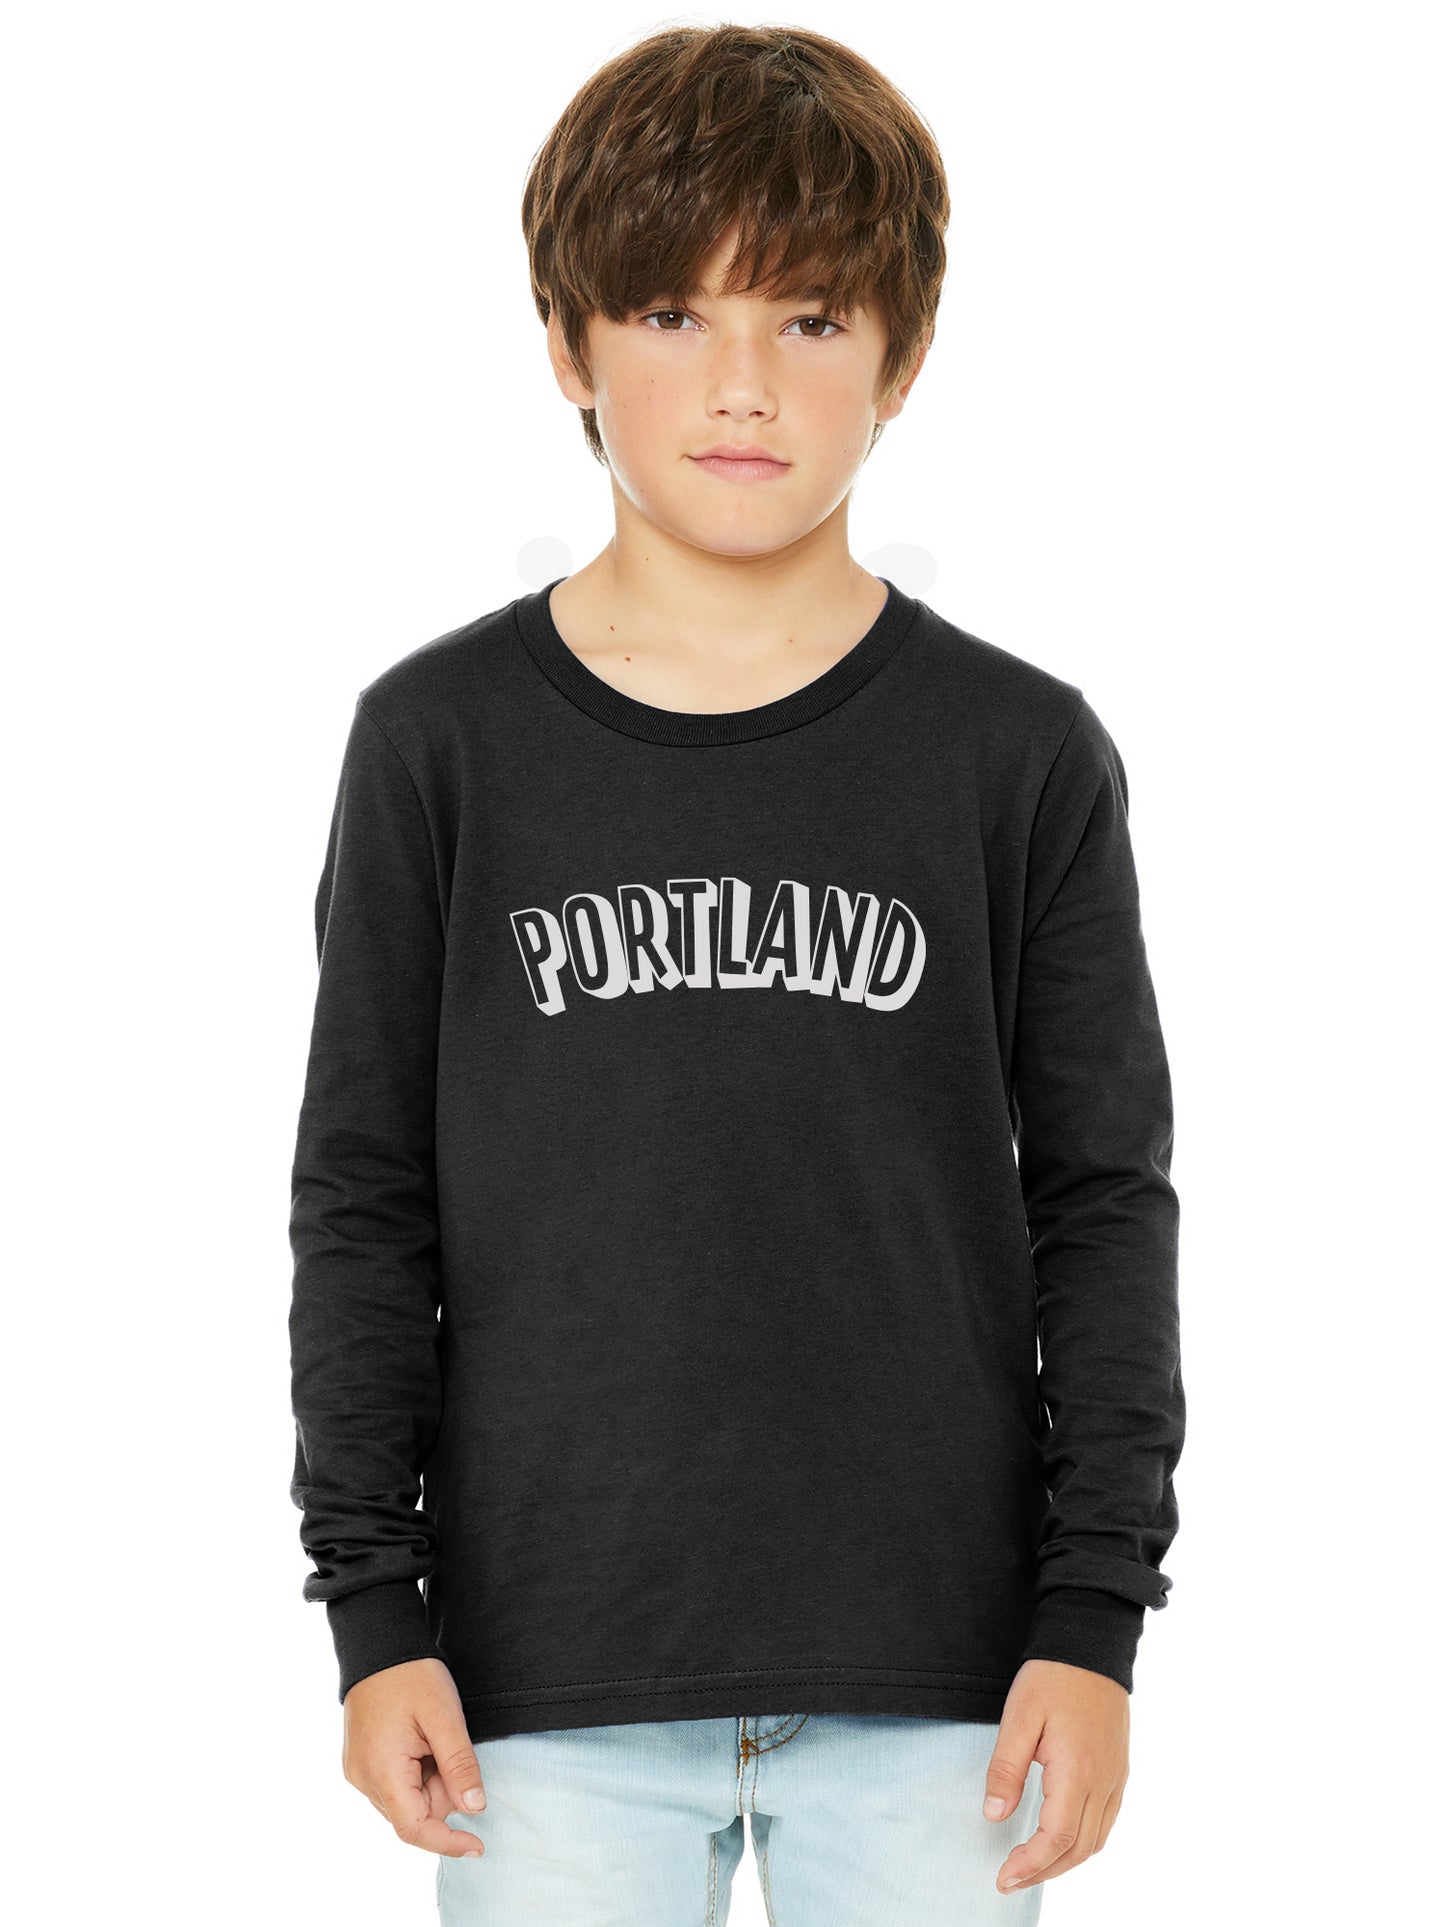 Daxton Youth Long Sleeve Portland Basic Tshirt